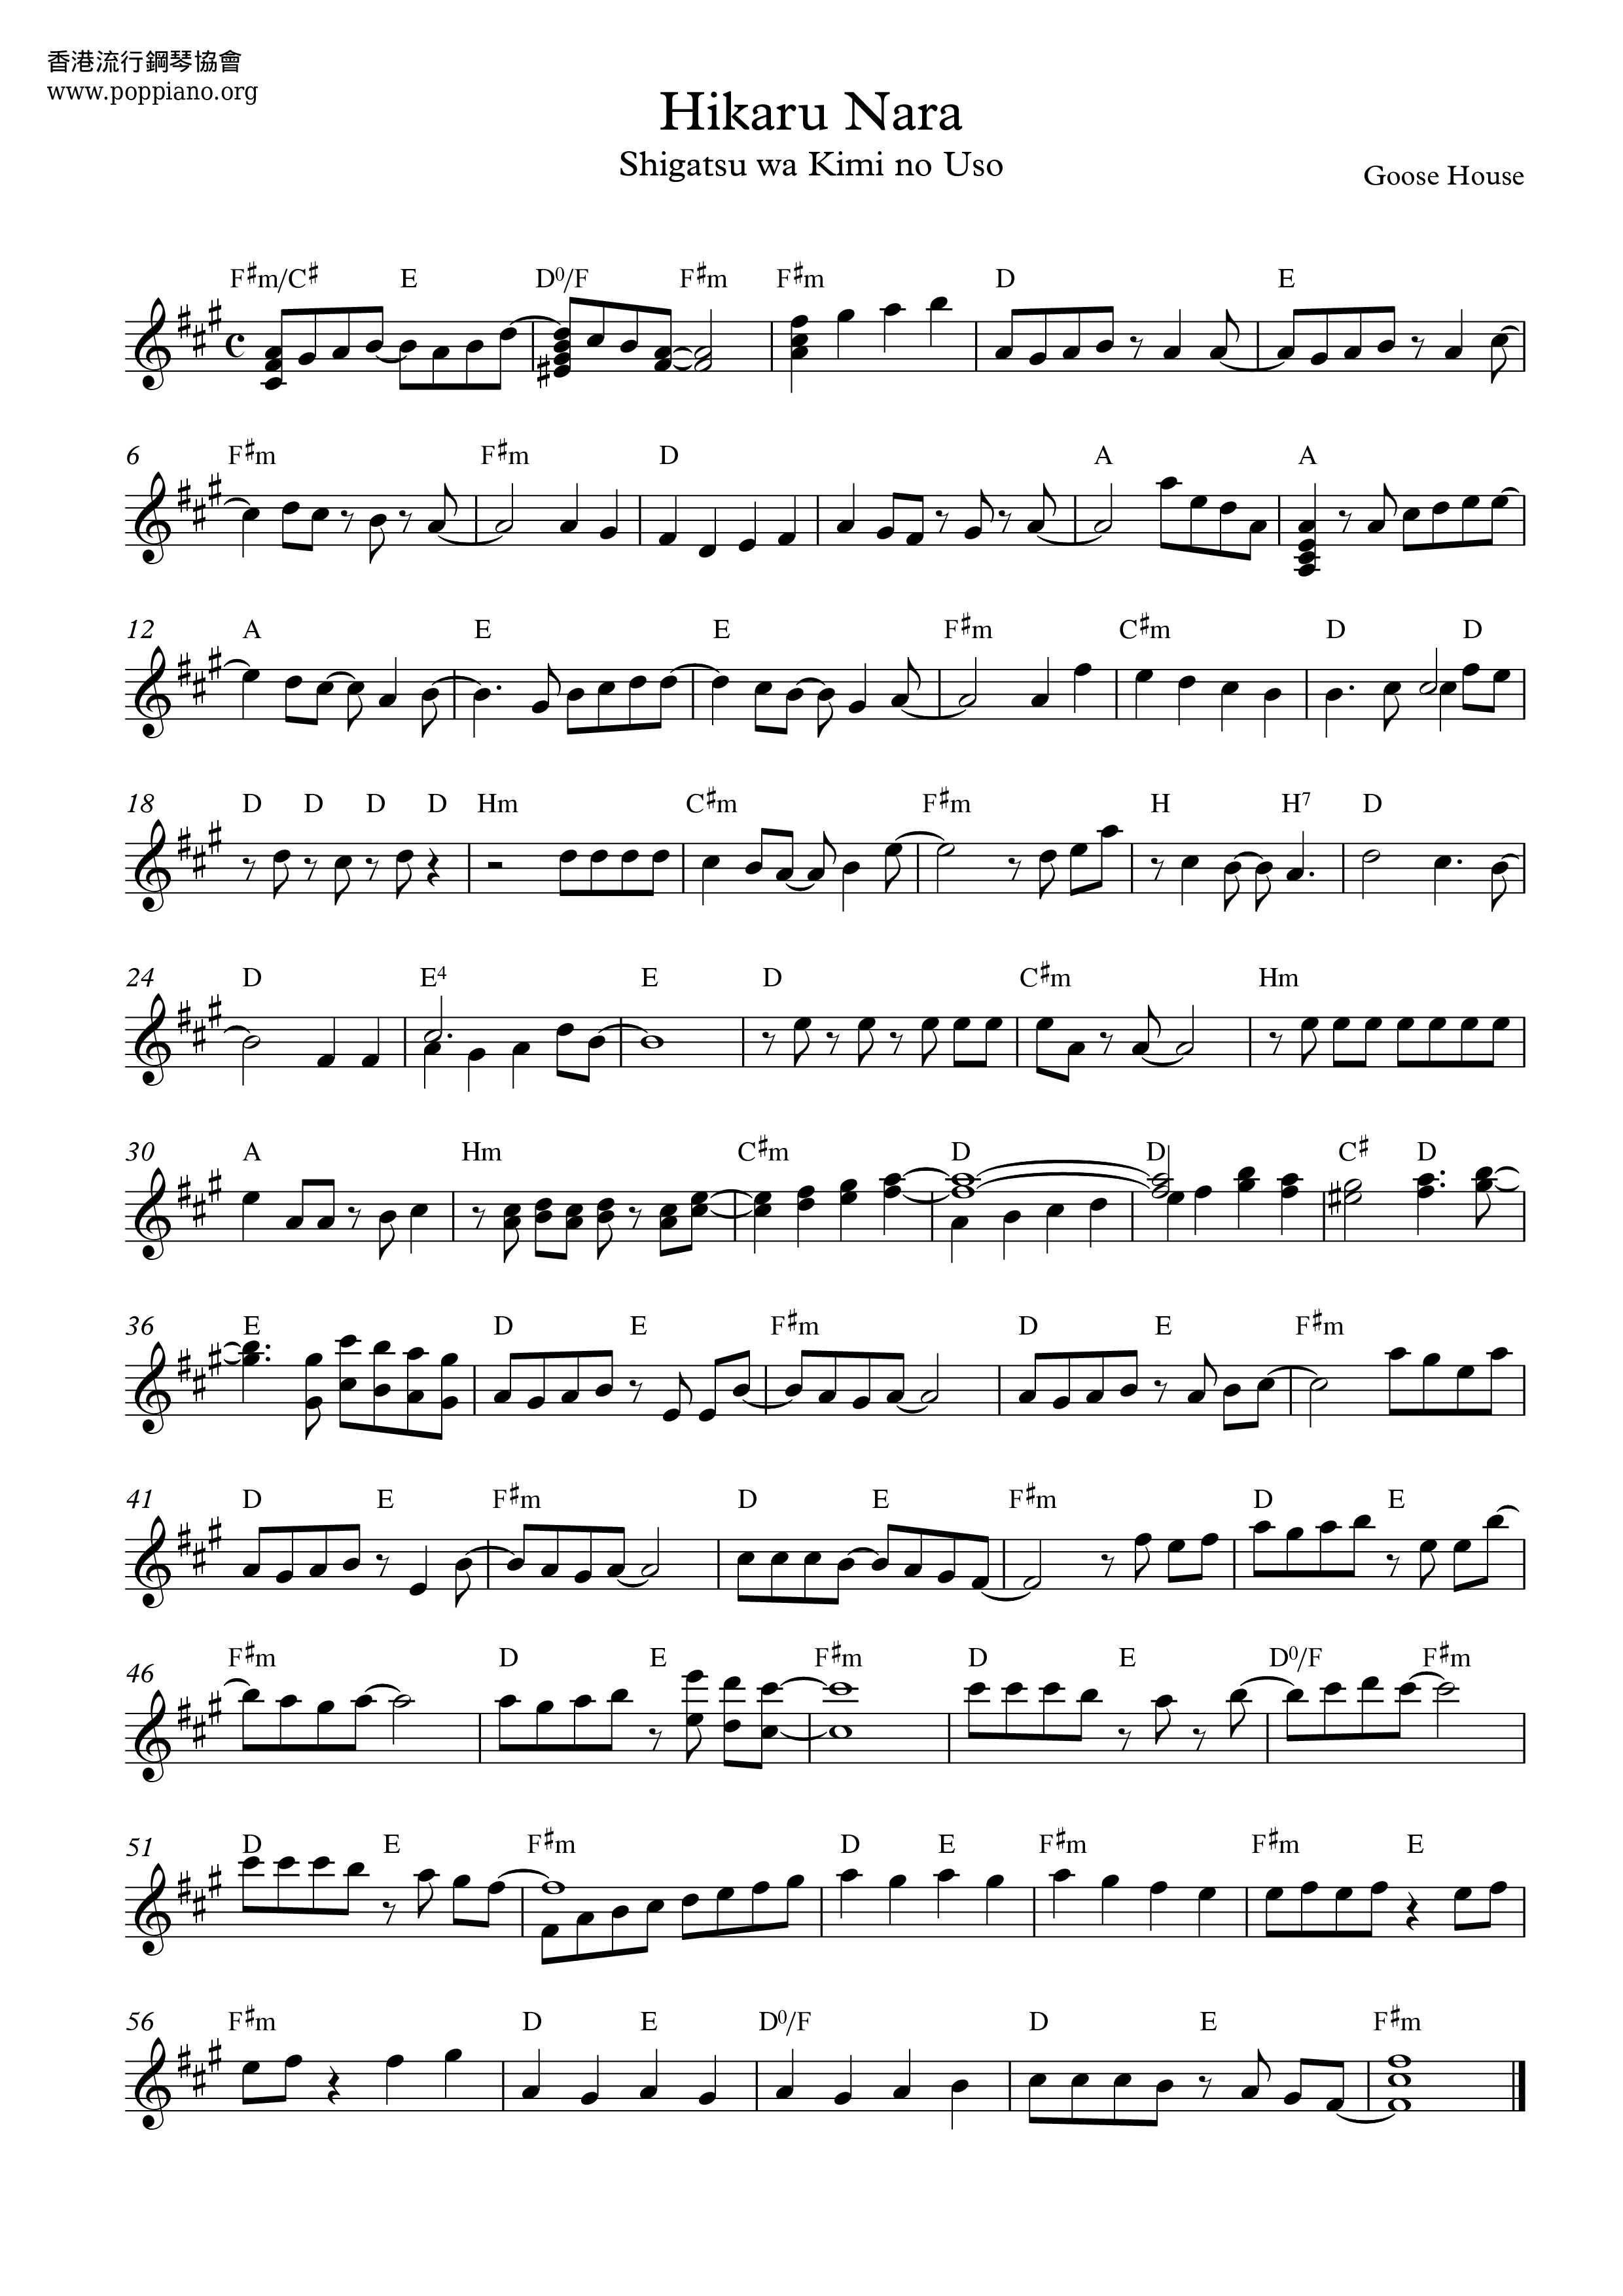 ☆ 四月是你的谎言 - Hikaru Nara, Sheet Music, Piano Score Free PDF Download